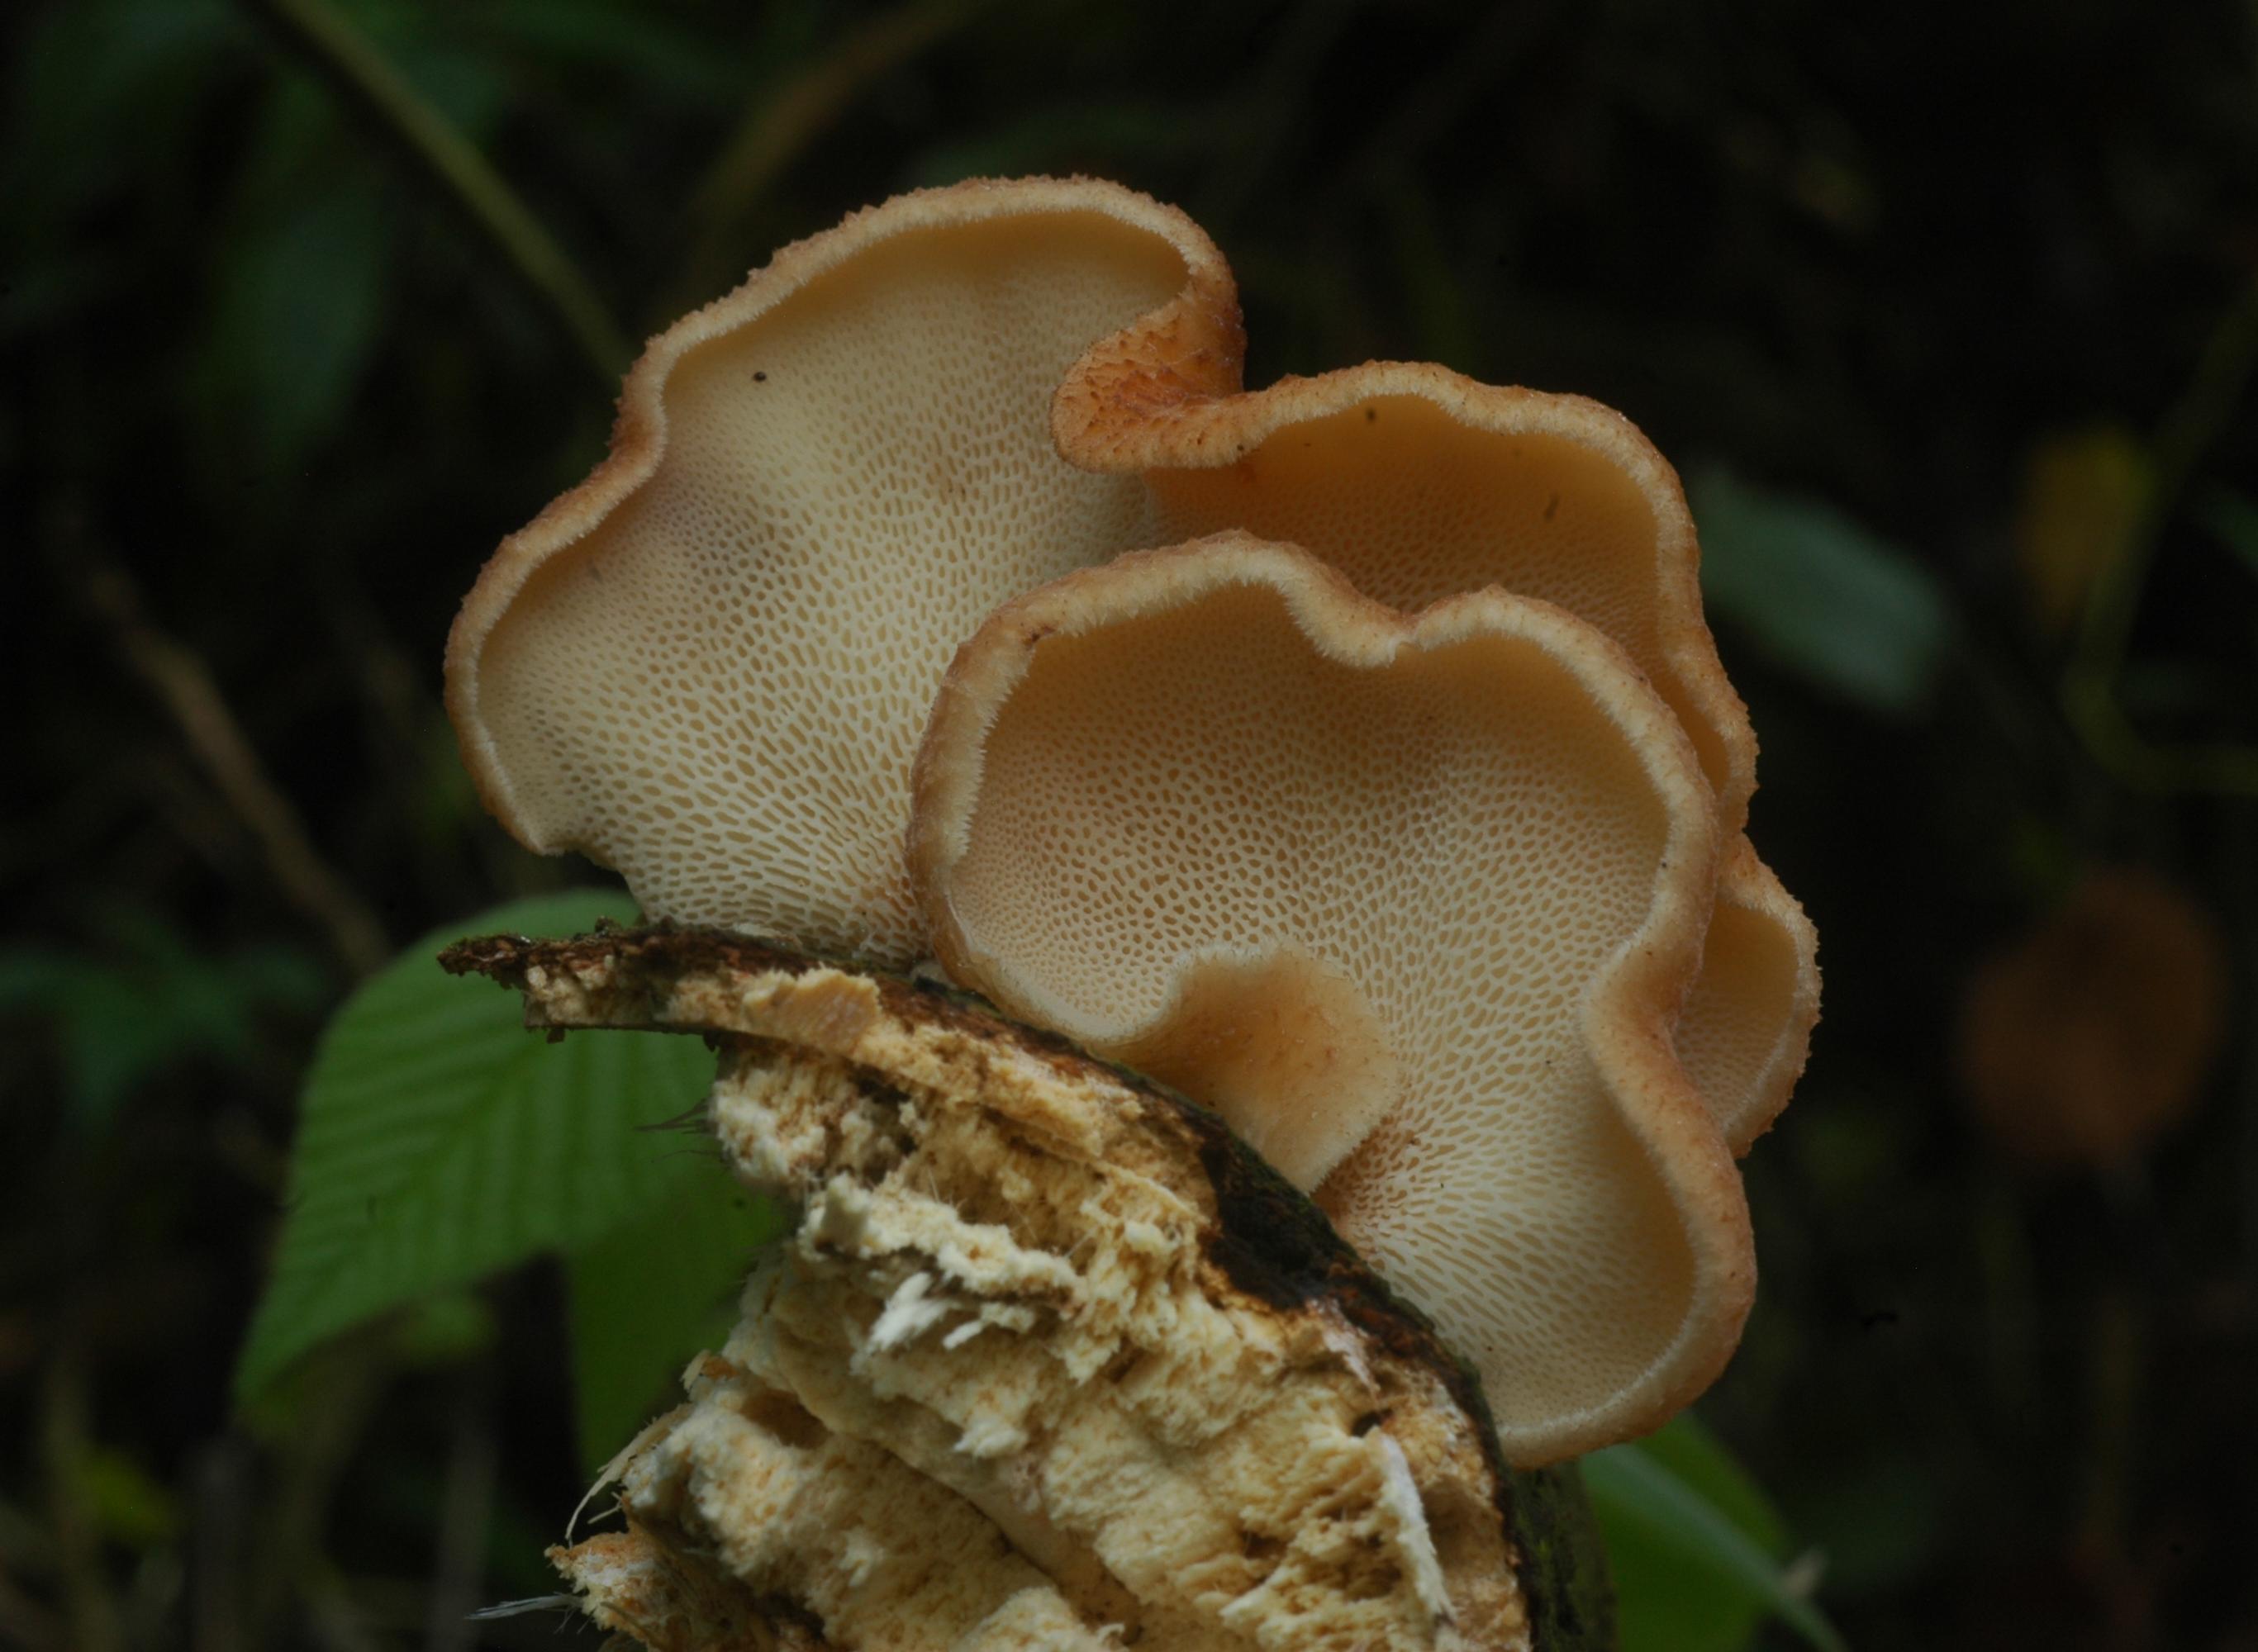 Aliments ou composants de la médecine traditionnelle, les champignons sont très recherchés par la population (Photo: S. Declerck)